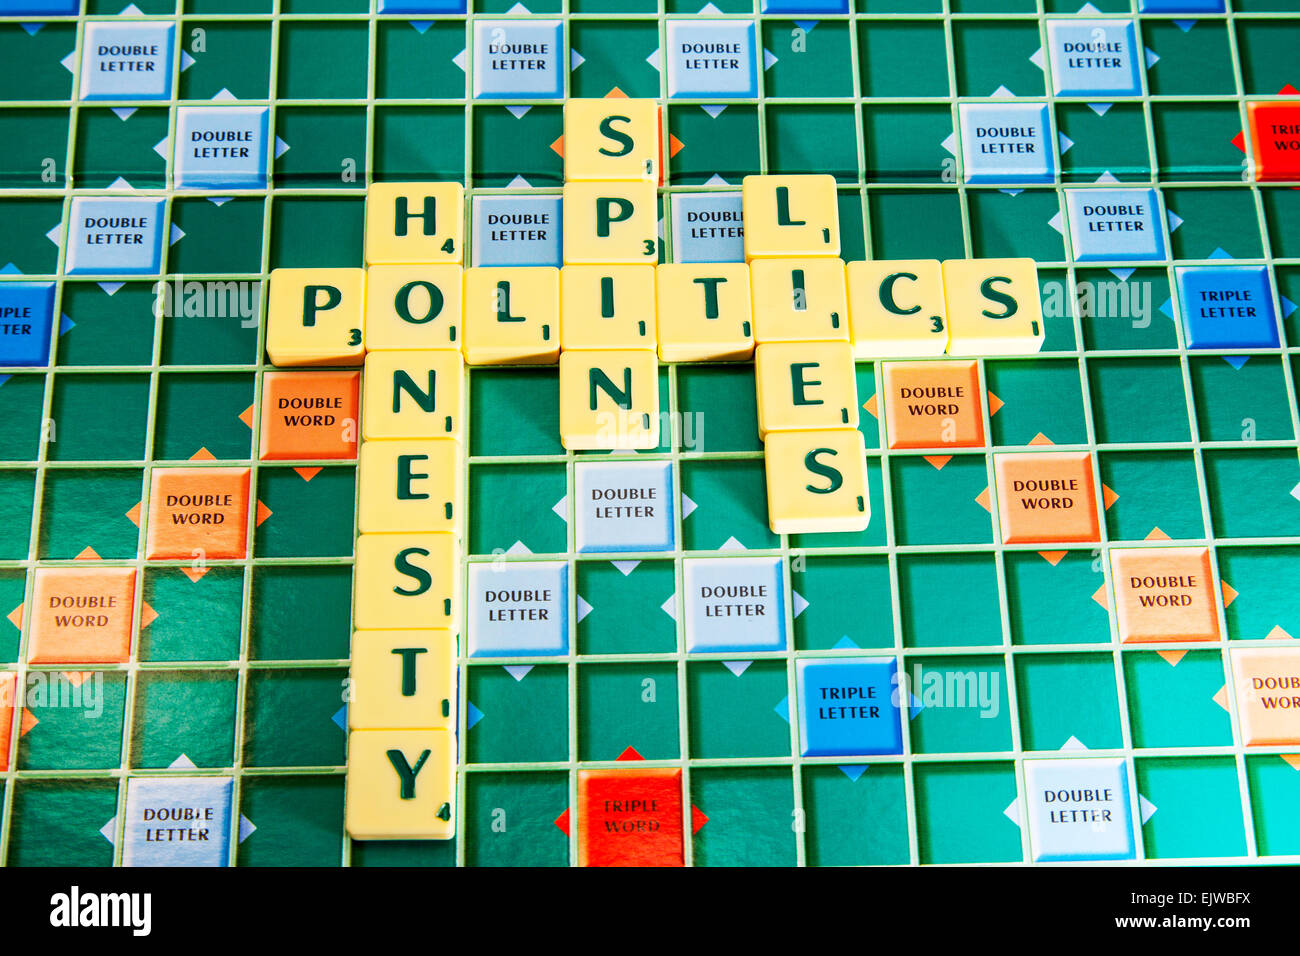 Politik-Ehrlichkeit-Spin liegt Politiker Regierung Wahlen ehrlich Lier die Wörter mit Scrabble Fliesen zu buchstabieren Stockfoto